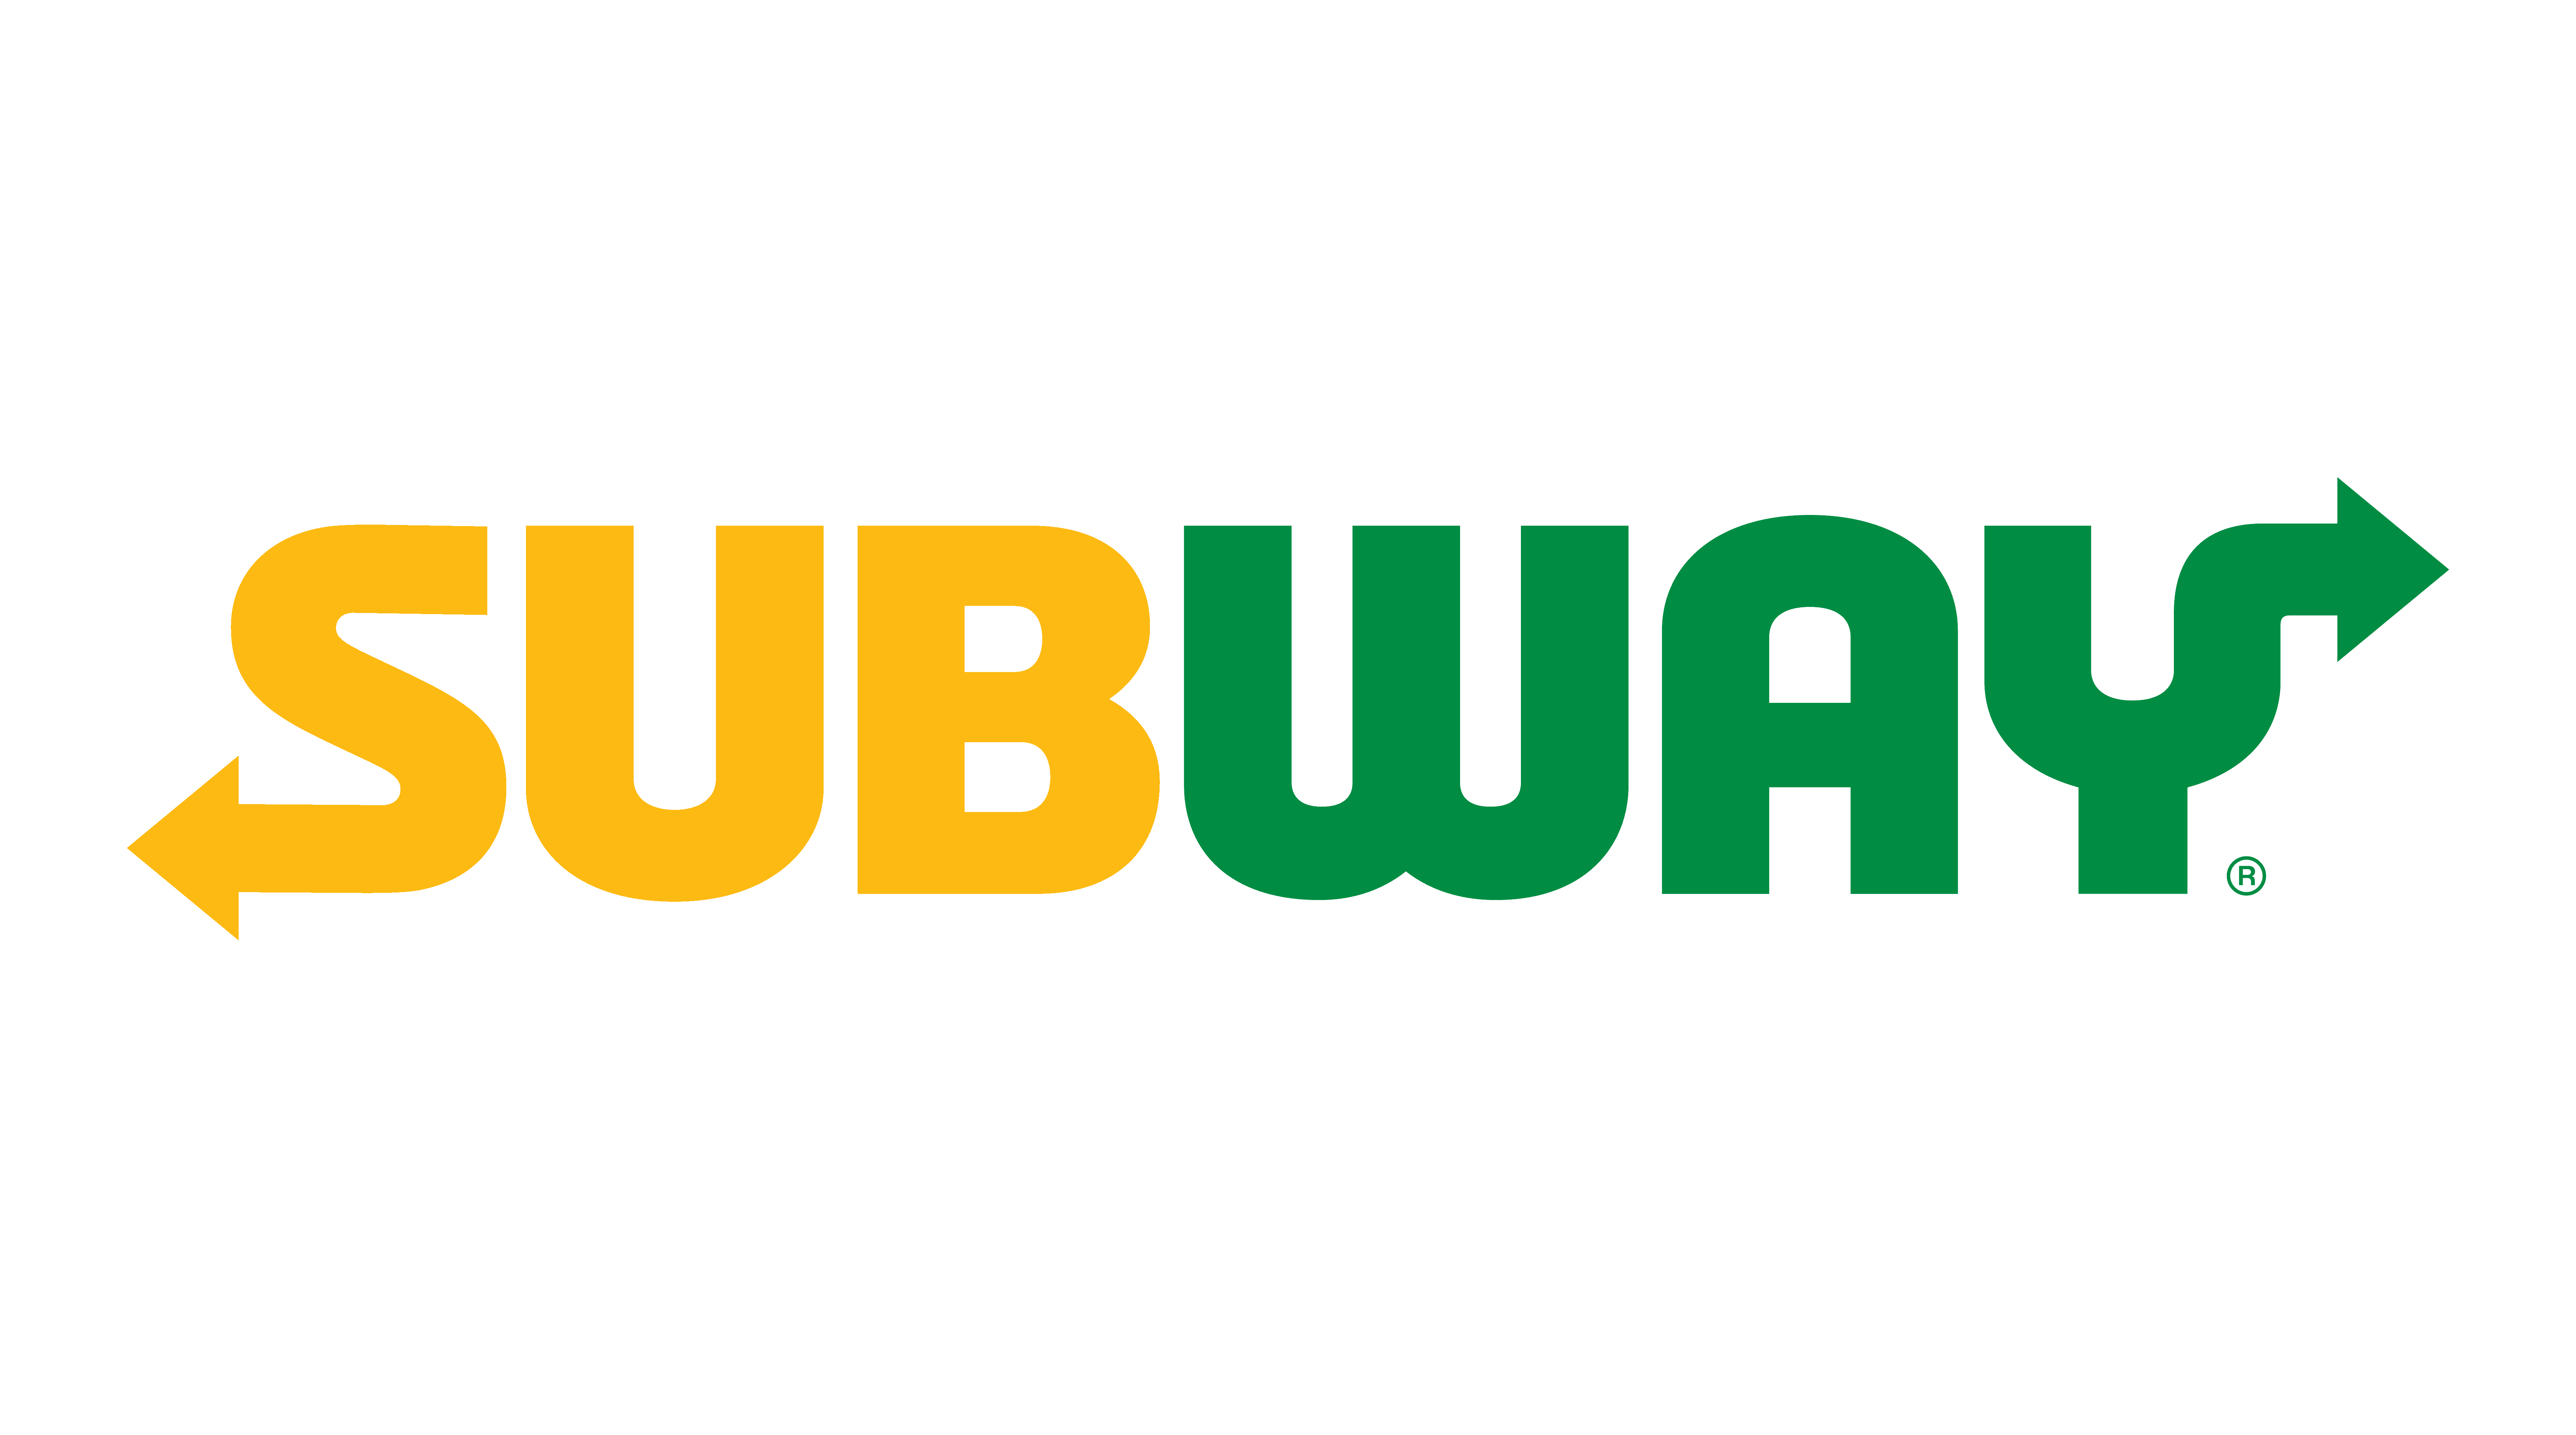 Subway-logo.png